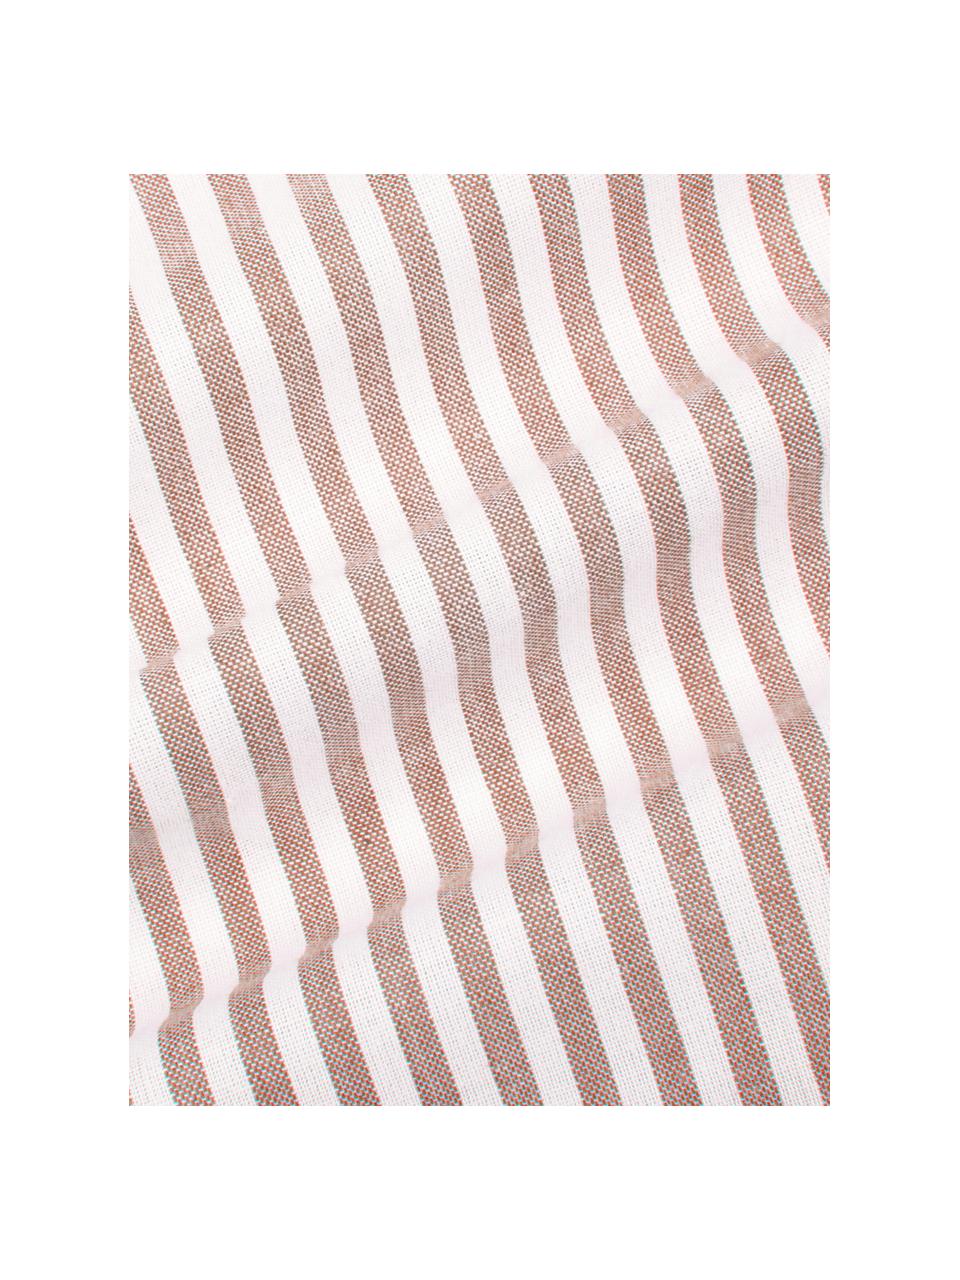 Pruhované povlečení z bavlny renforcé Ellie, Bílá, červená, 200 x 200 cm + 2 polštáře 80 x 80 cm